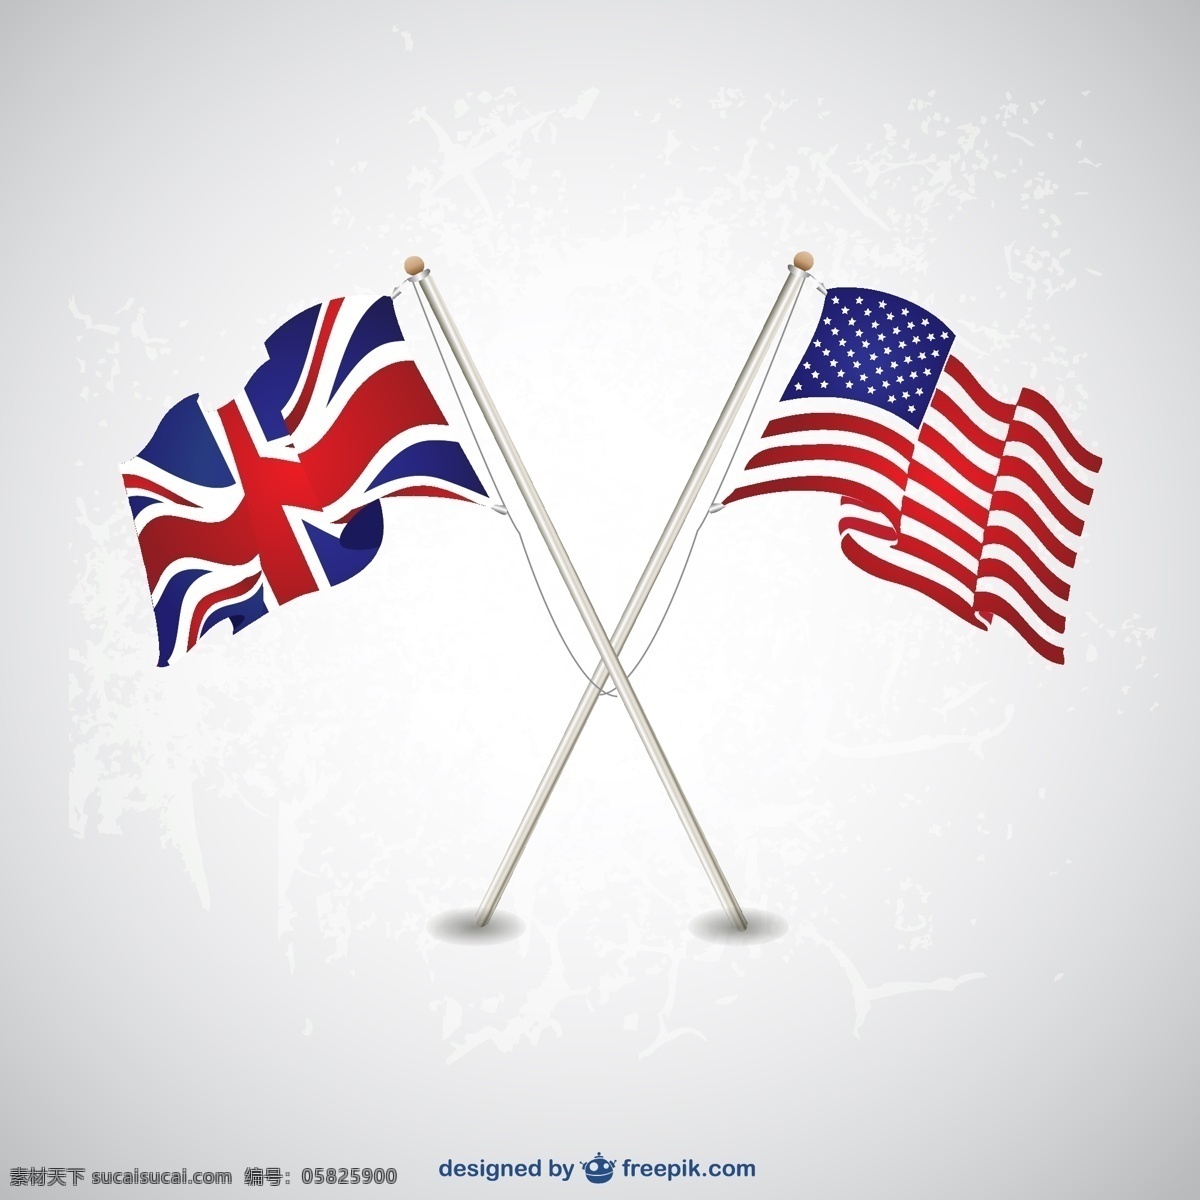 美国 英国 国旗 模板 旗帜 波浪 蓝色 颜色 图形 布局 平面设计 独立纪念日 符号 日 白色